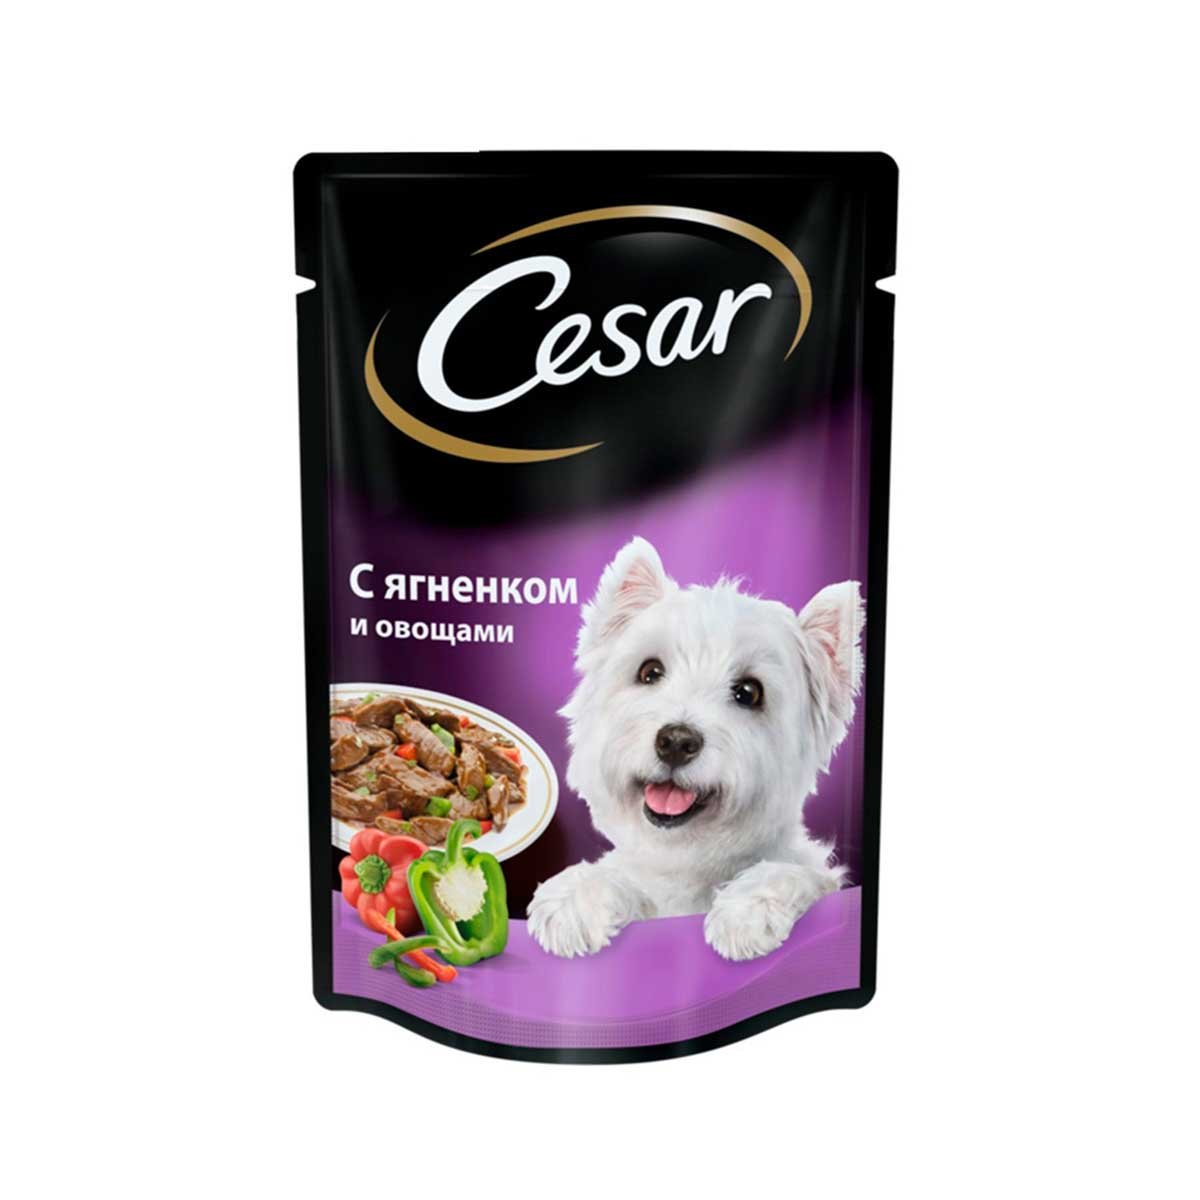 Корм для собаки тула. Влажный корм для собак Cesar. Сезар корм влажный для собак. Cesar д/с жаркое с уткой м/п 85г/28. Cesar для собак 85г.